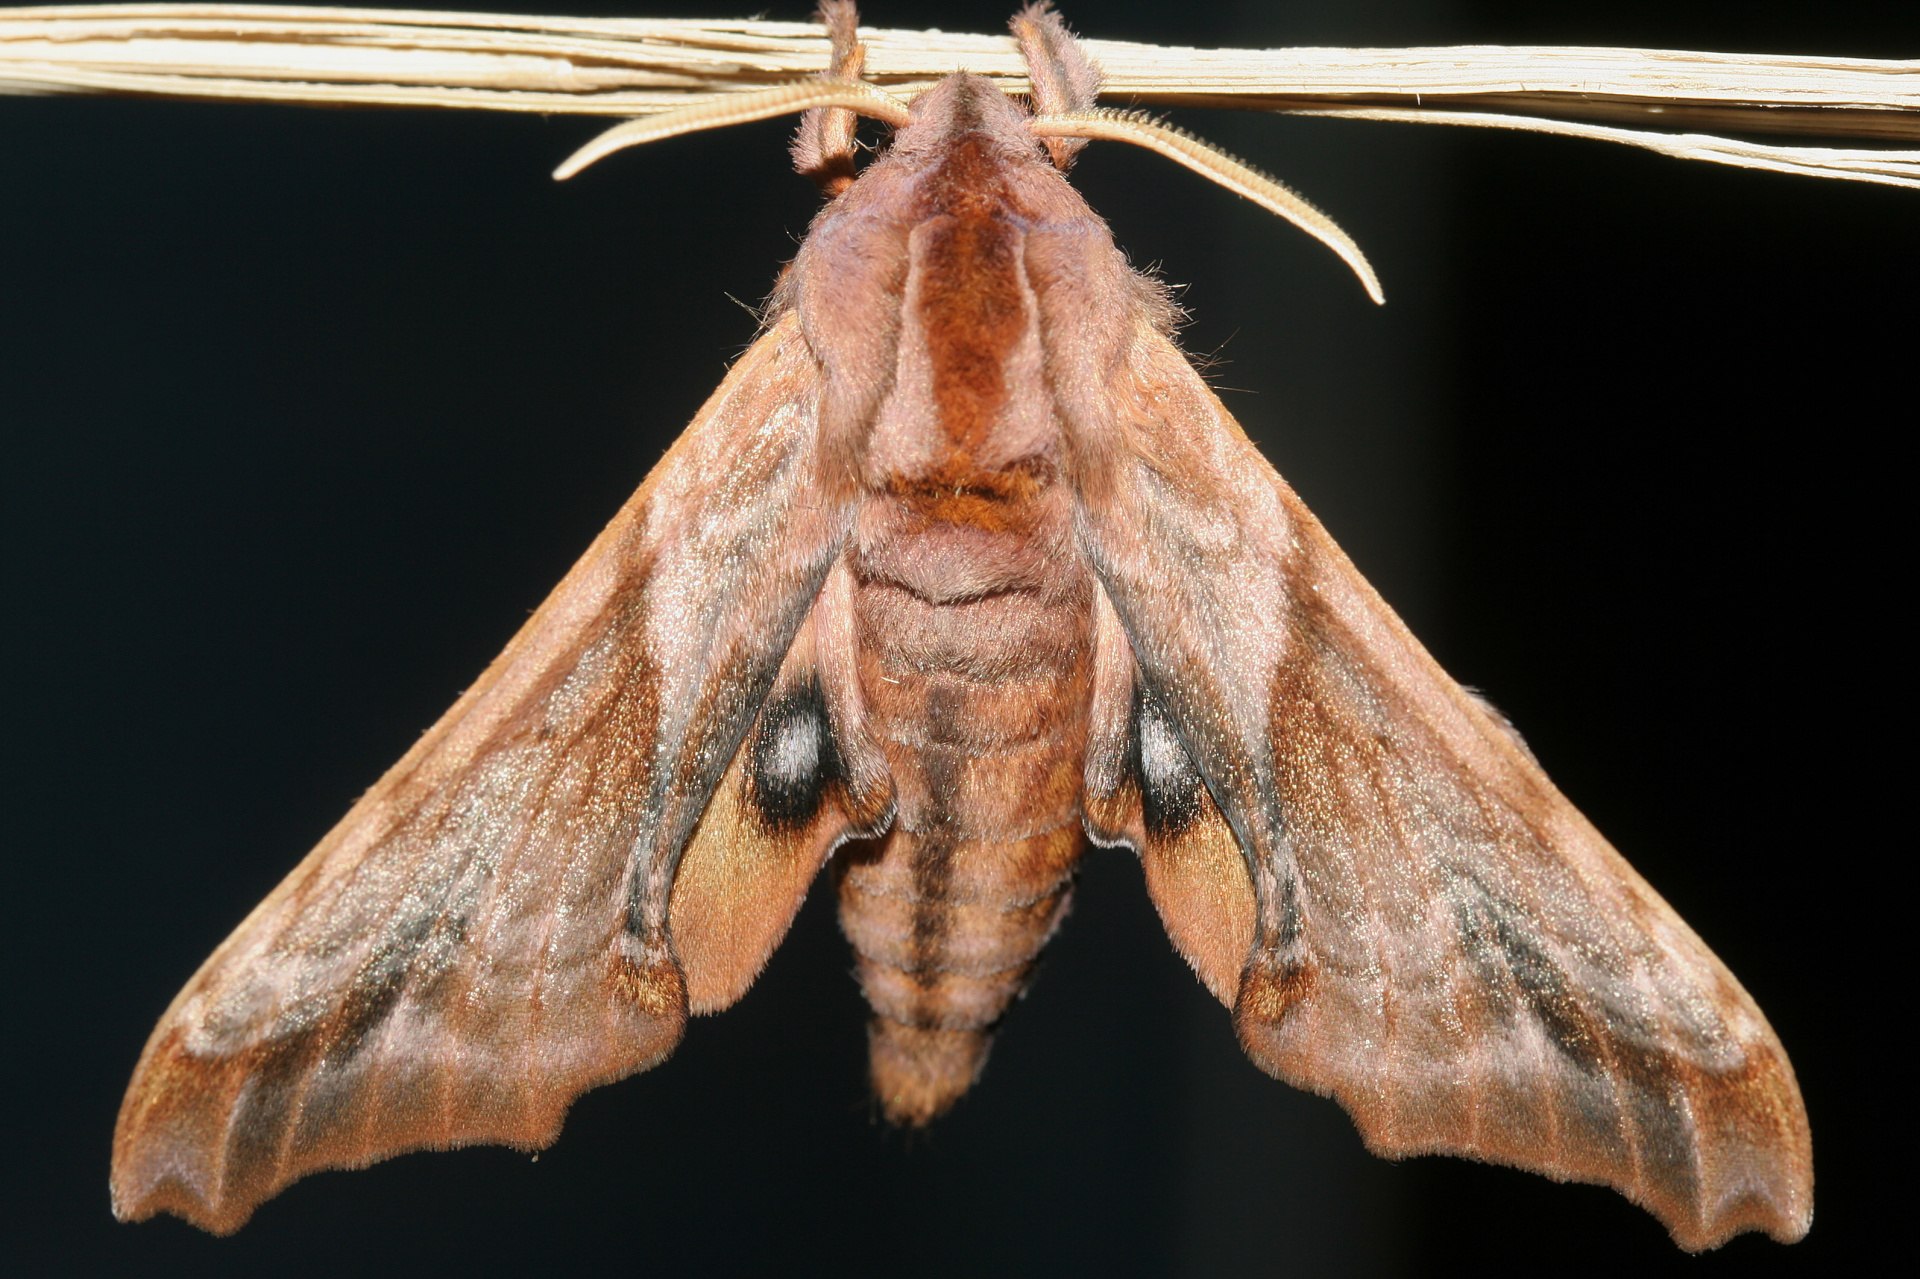 Paonias myops (Podróże » USA: Epopeja Czejeńska » Zwierzęta » Owady » Motyle i ćmy » Sphingidae)